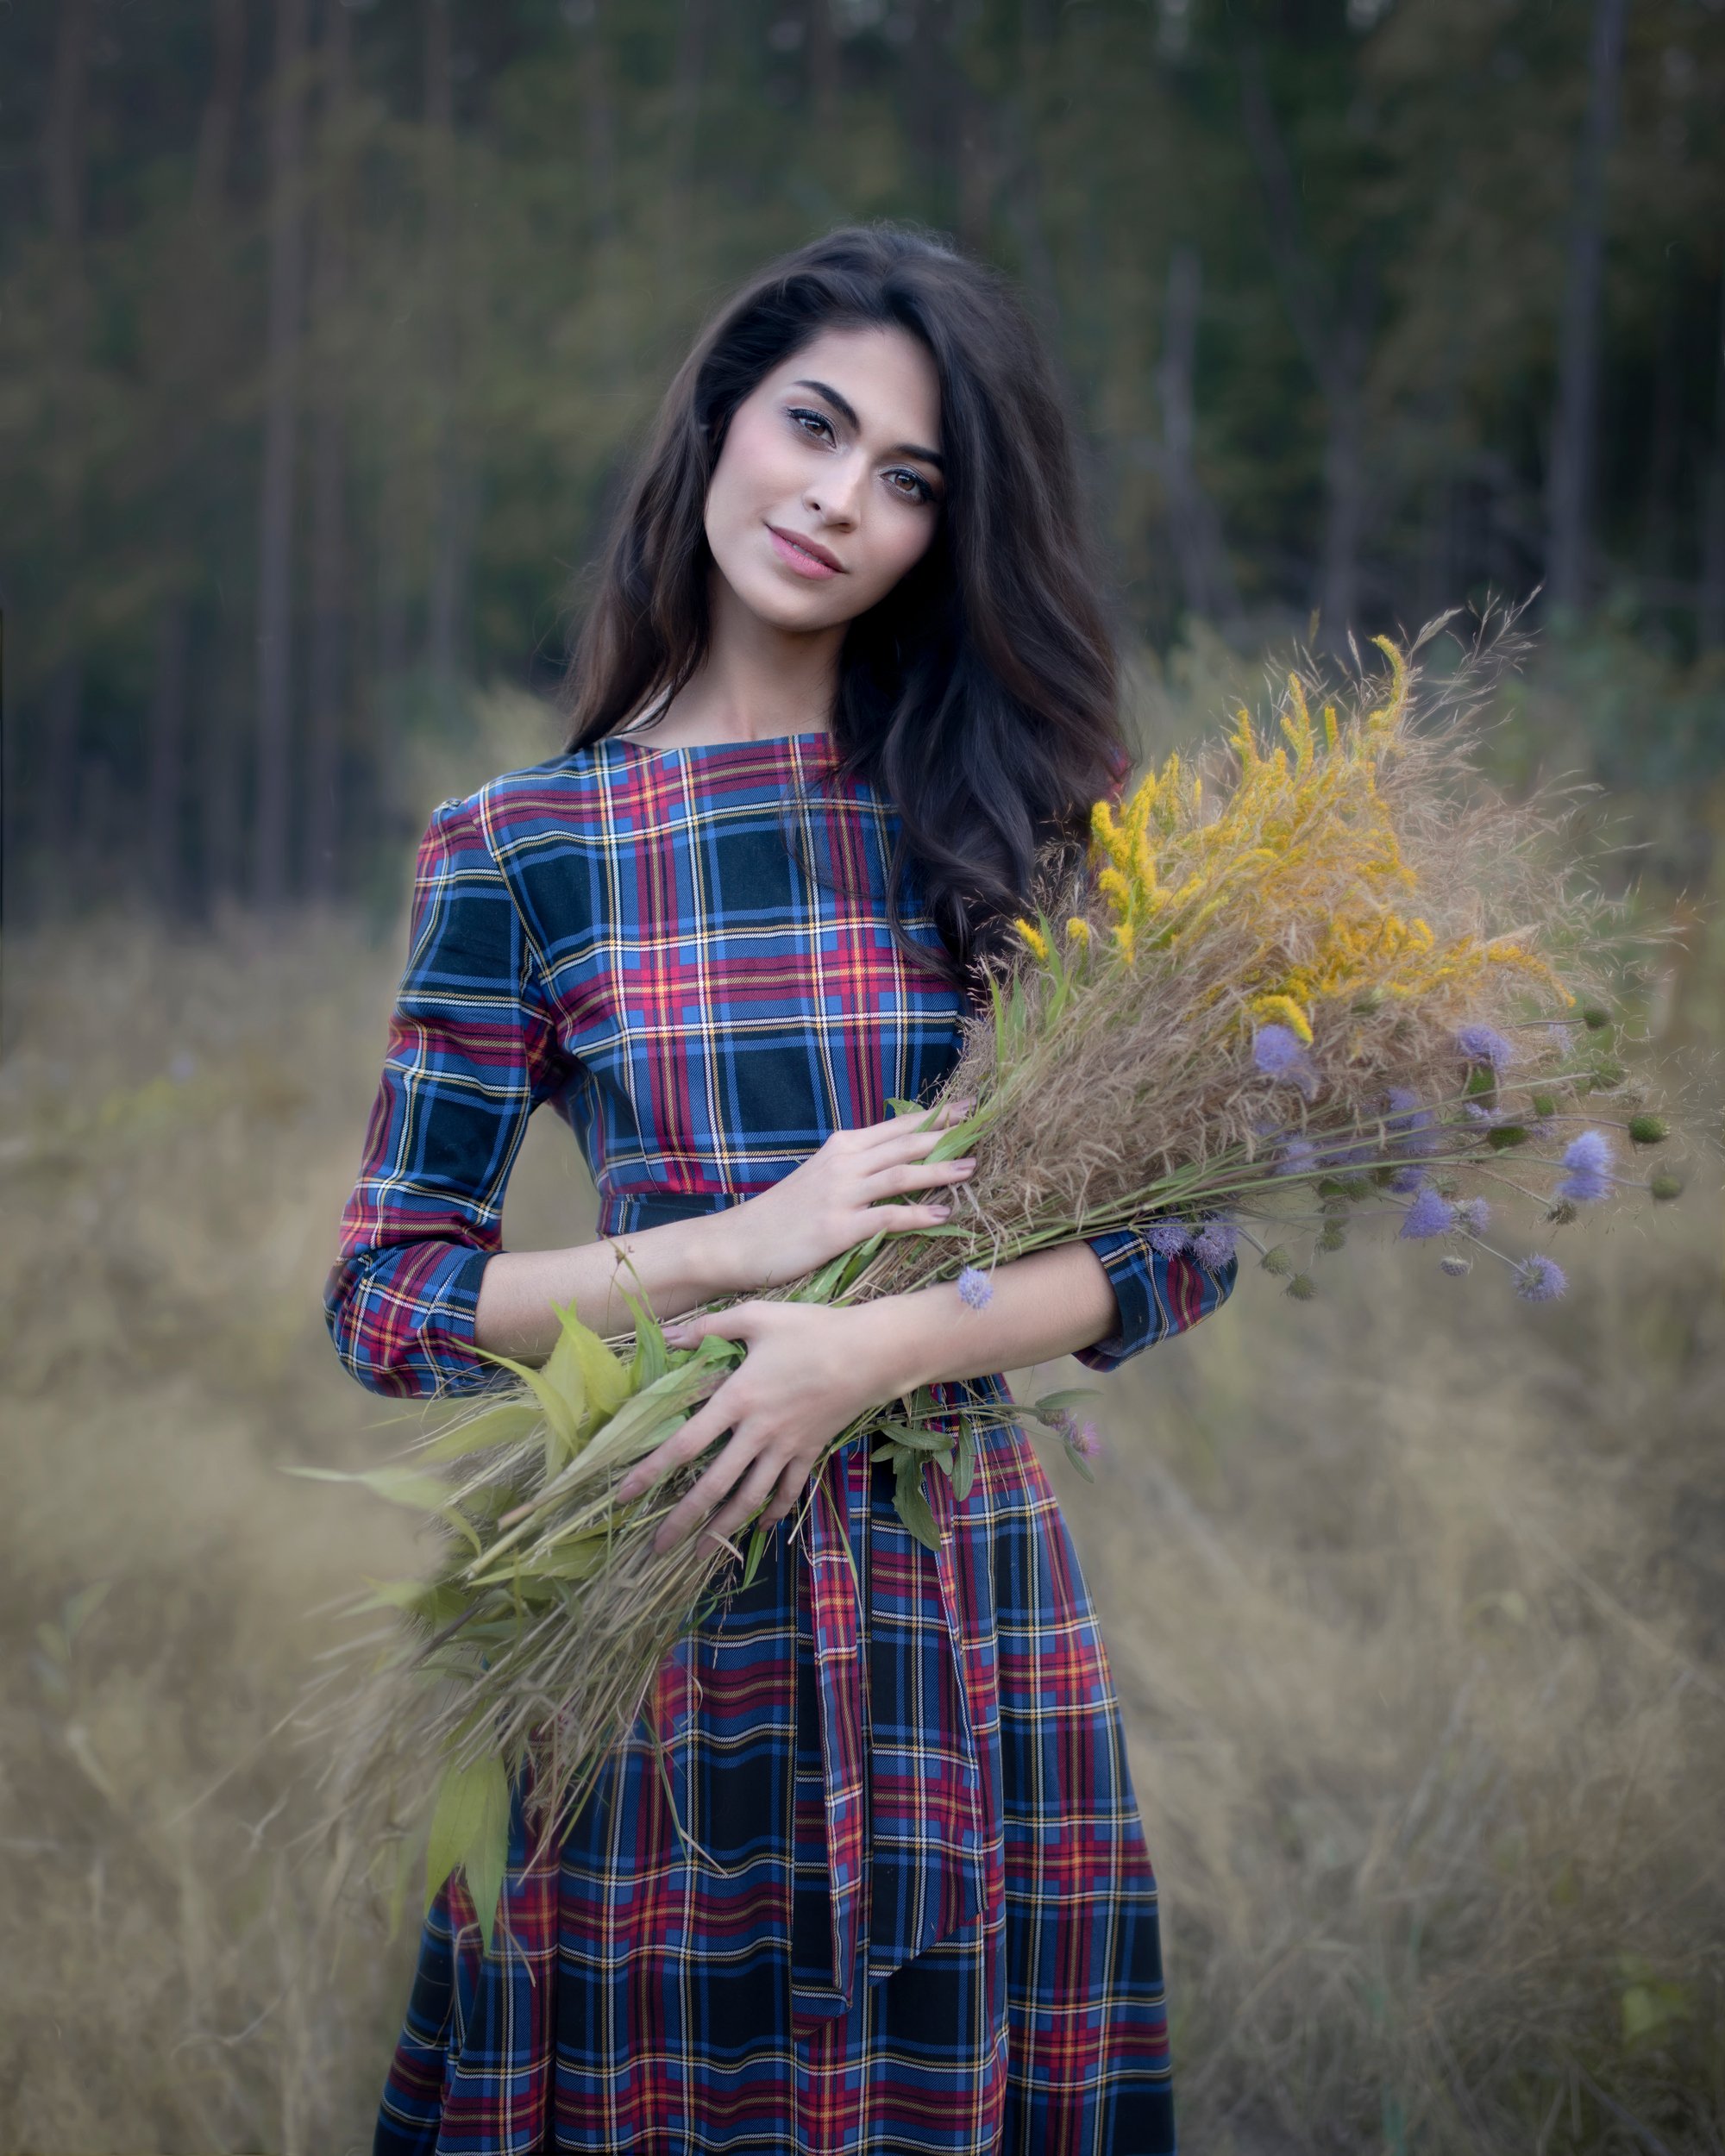 артфото, фотографмосква, художественнаяфотография, осень, букет, Evgeniya Fedorova